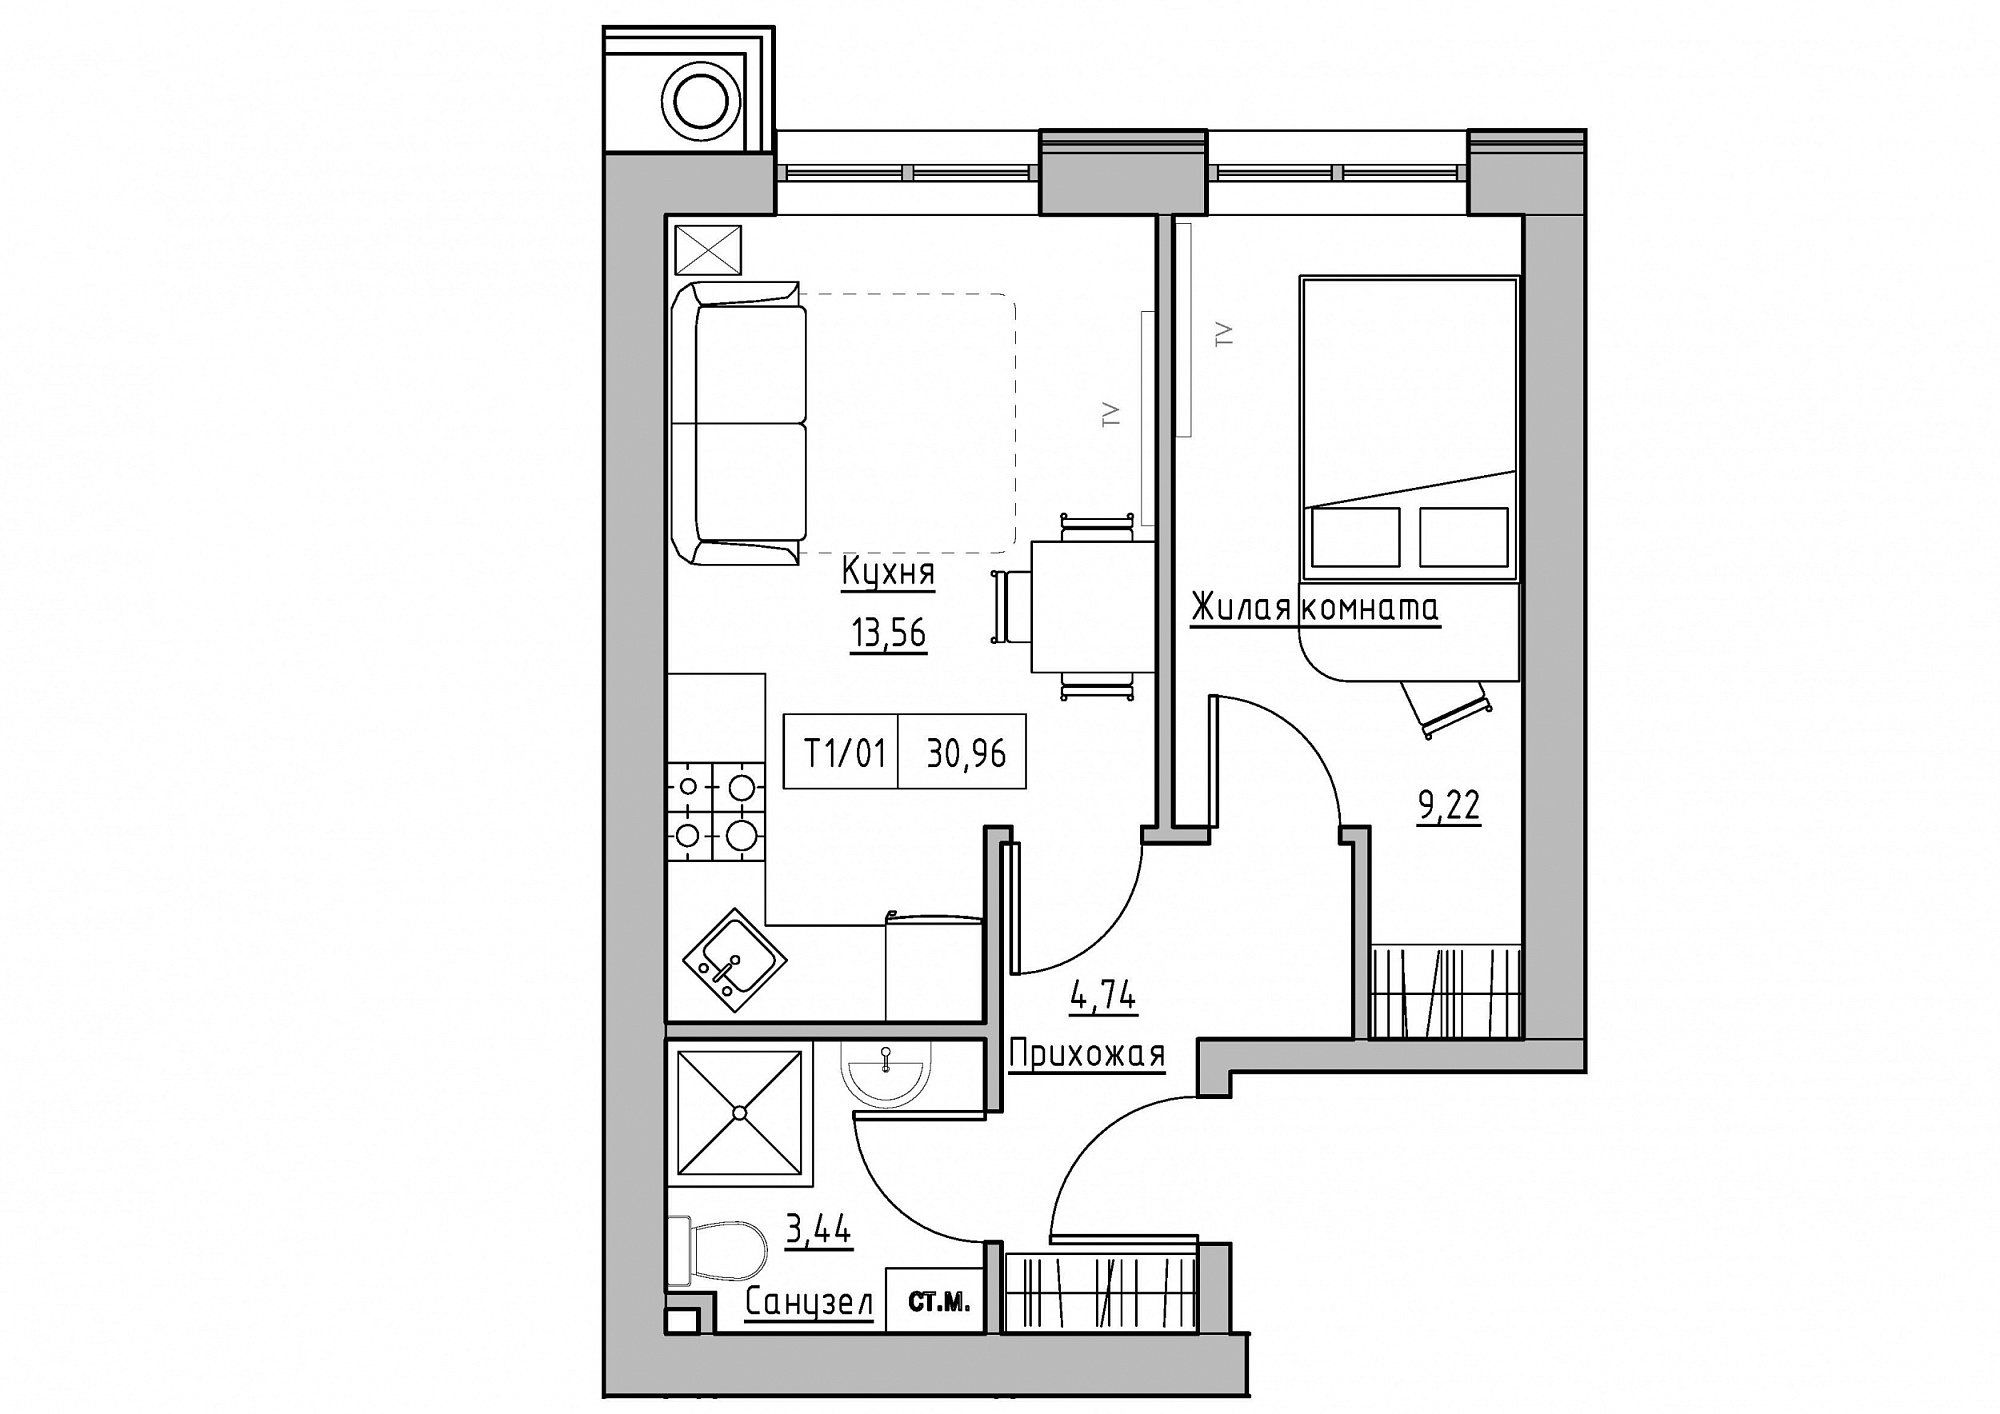 Планировка 1-к квартира площей 30.96м2, KS-011-01/0013.